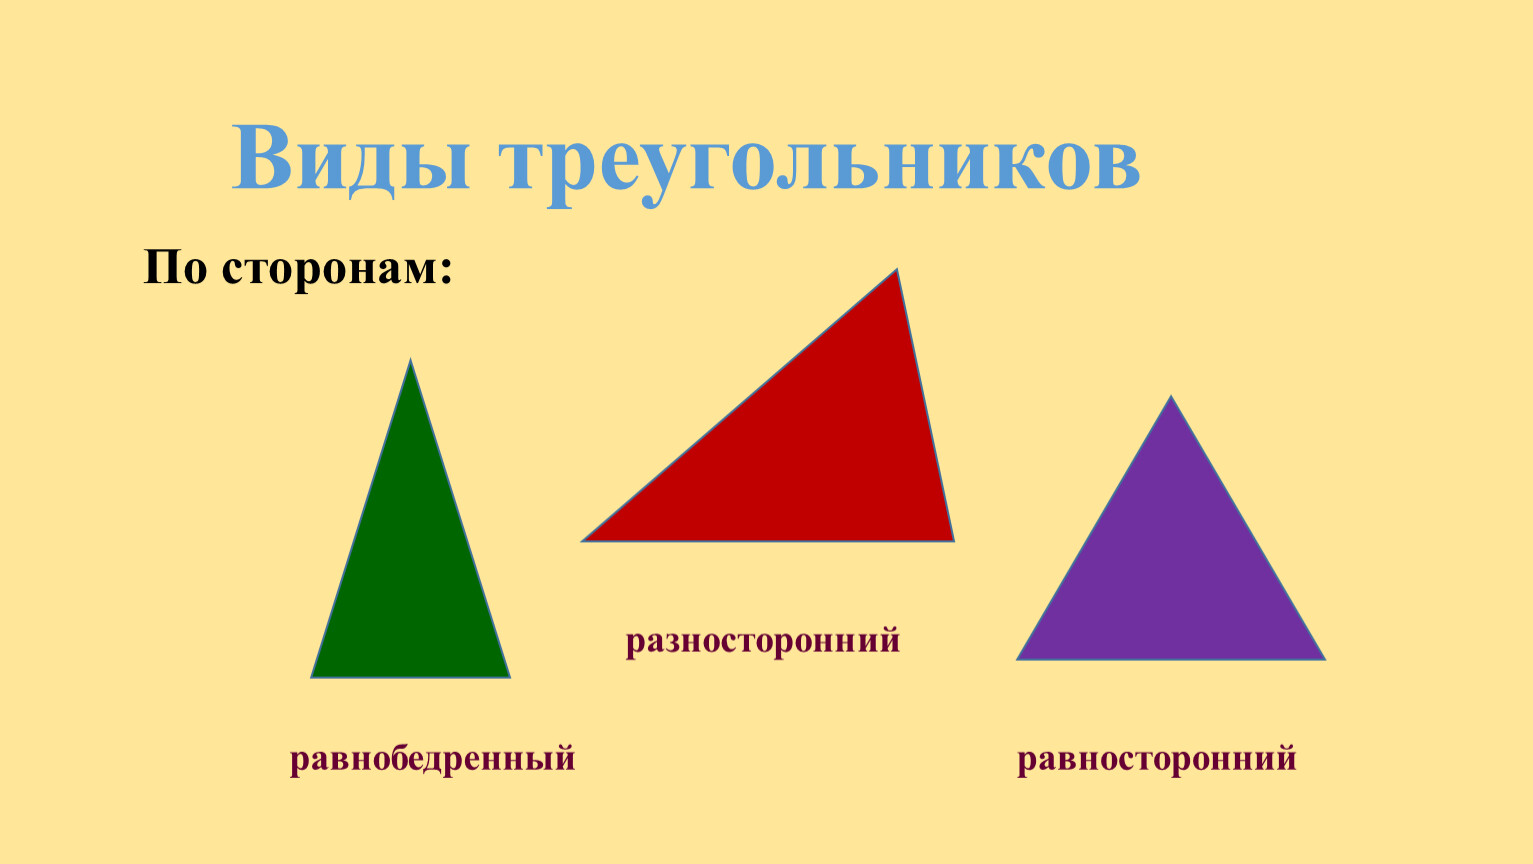 Виды углов равнобедренный равносторонний. Равнобедренный равносторонний и разносторонний треугольники. Разные треугольники. Треугольник с разными сторонами. Разные виды треугольников.